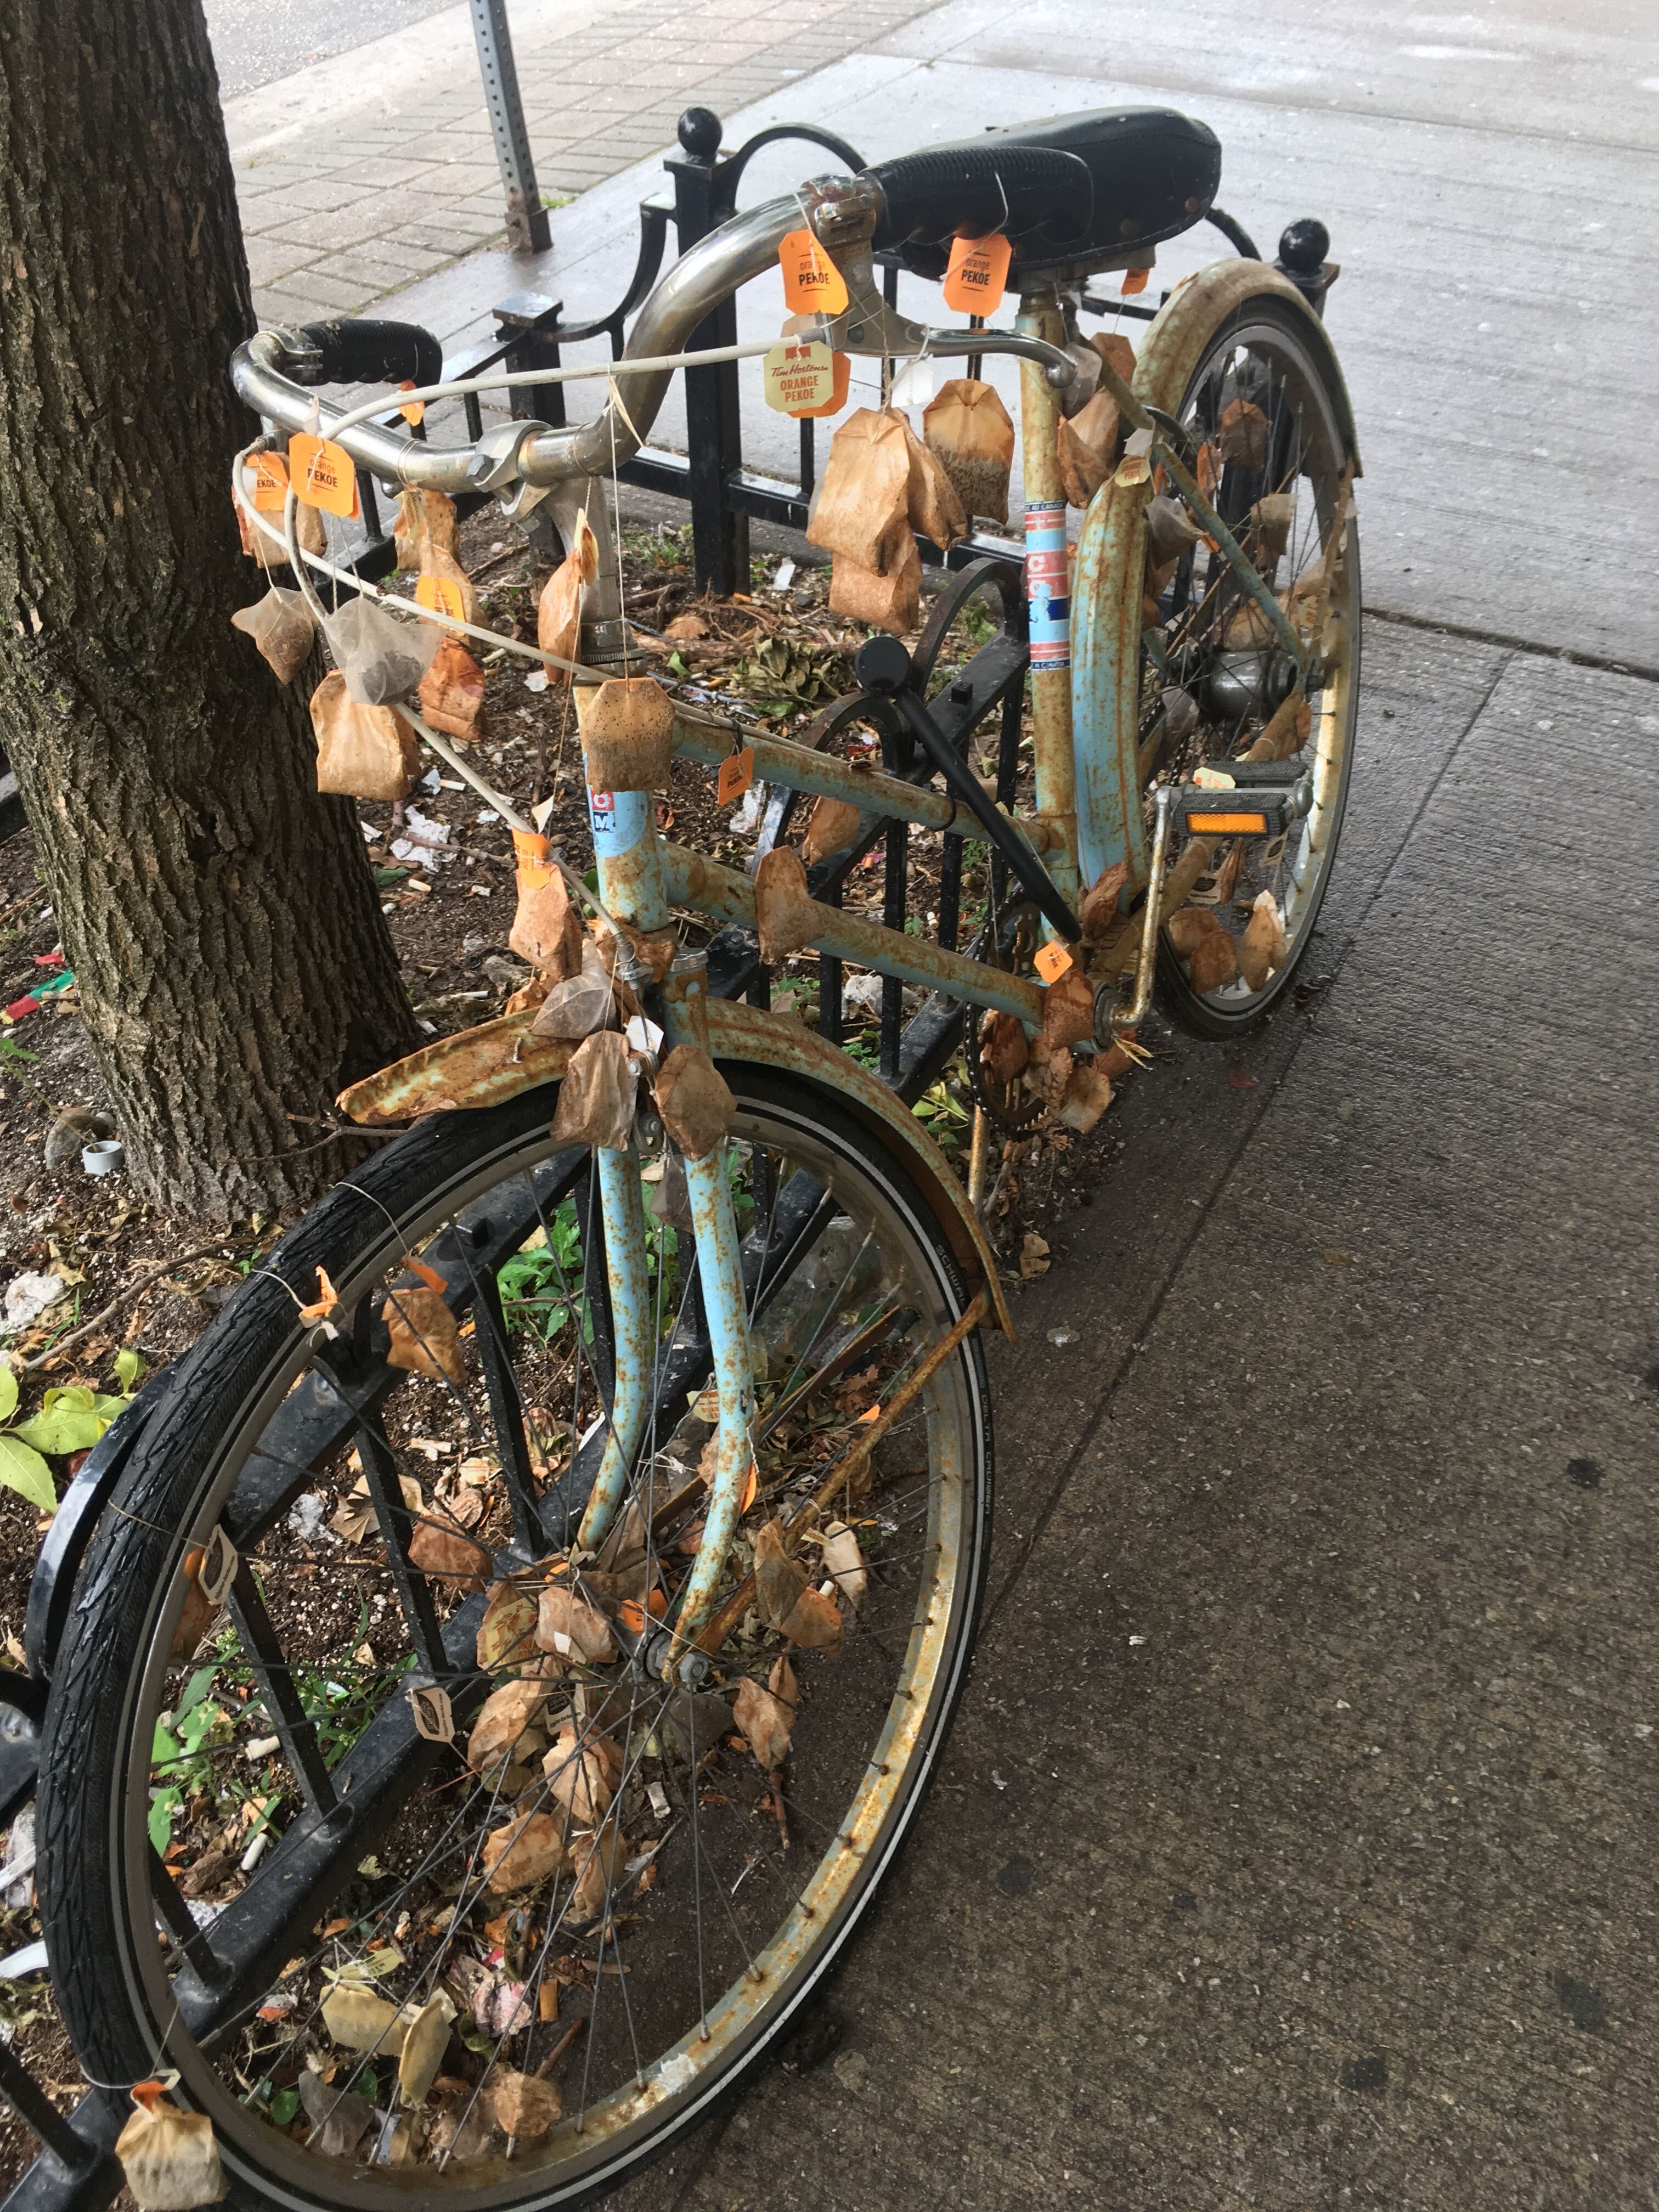 The Tea Bag Bicycle of Montréal